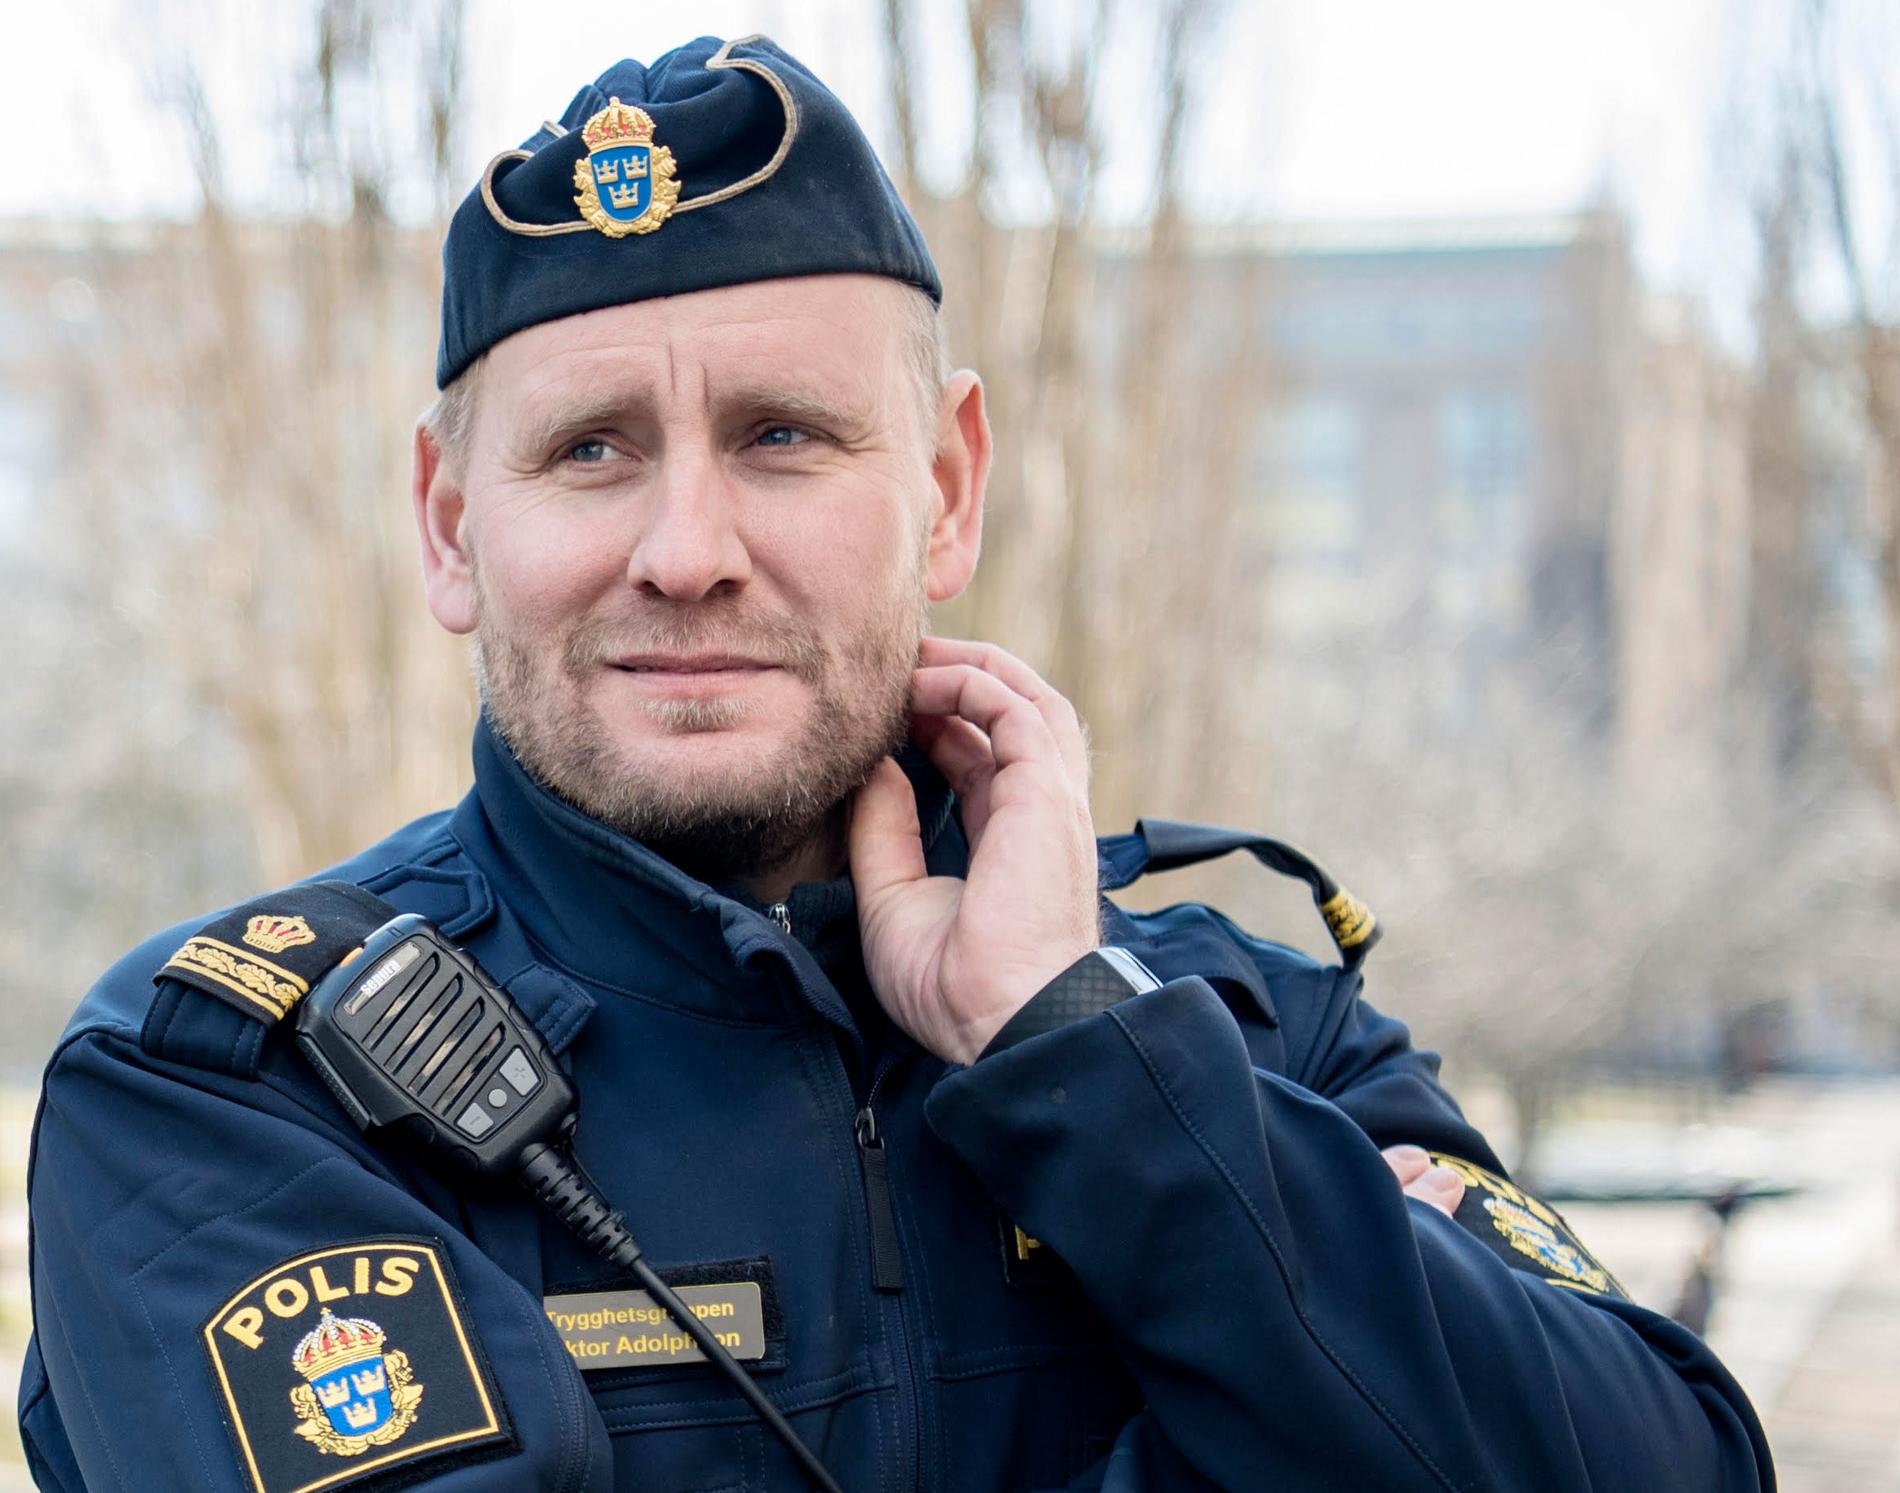 En av alla som riktat kritik mot videon är polisen Viktor Adolphson, som själv twittrar under namnet ”YB Södermalm”.